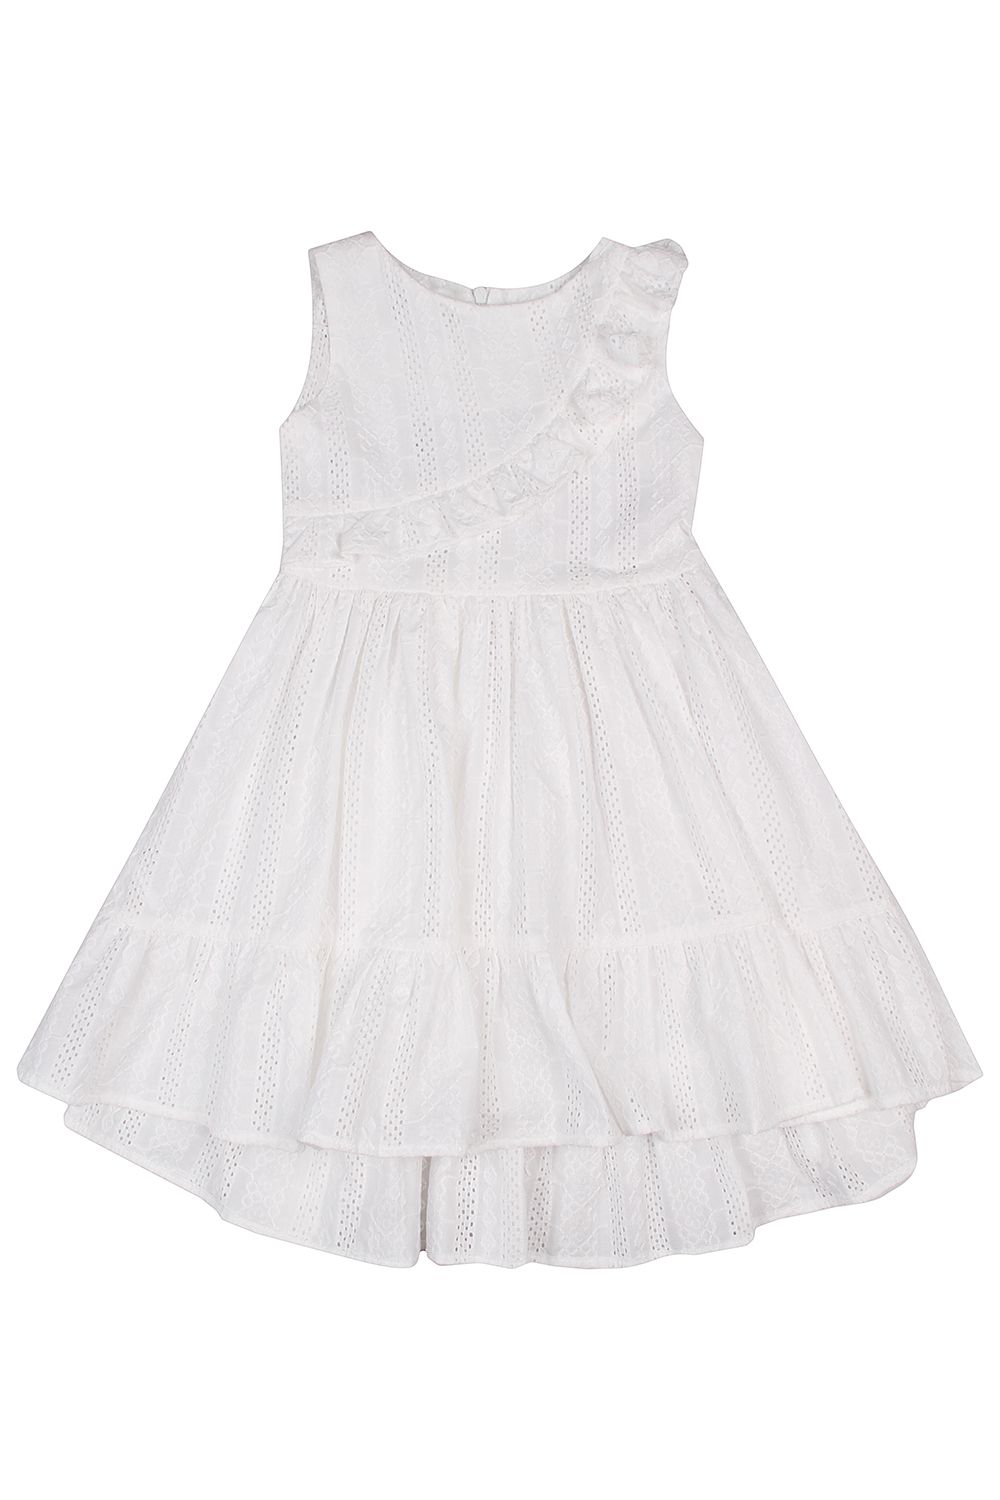 Платье Y-clu', размер 98, цвет белый YB13649 - фото 2